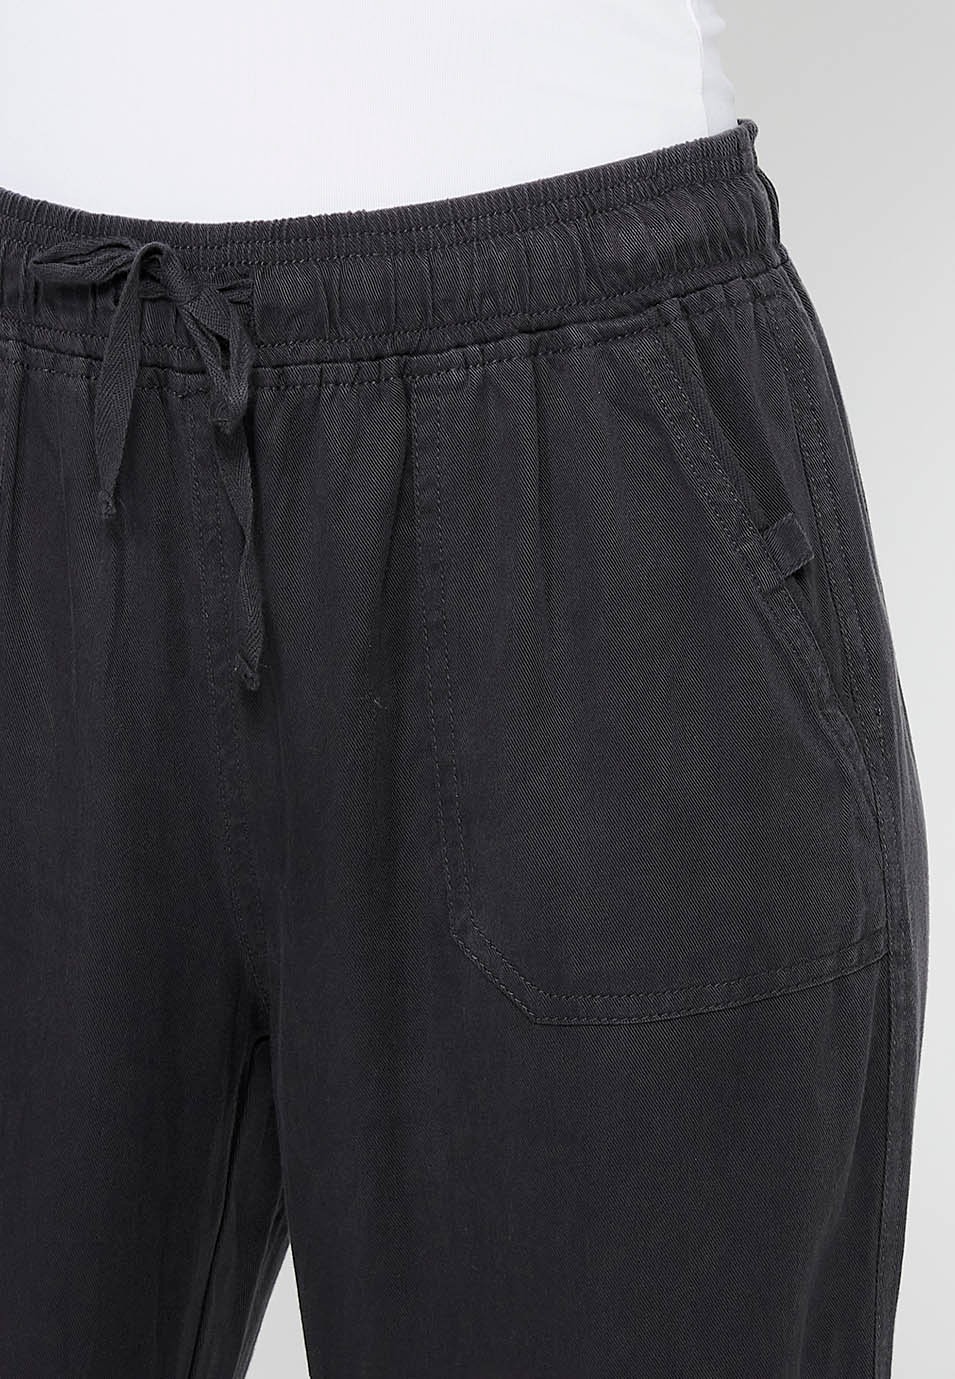 Pantalon de jogging long finition bouclée et taille caoutchoutée avec quatre poches dont deux à l'arrière avec rabat en Noir pour Femme 5